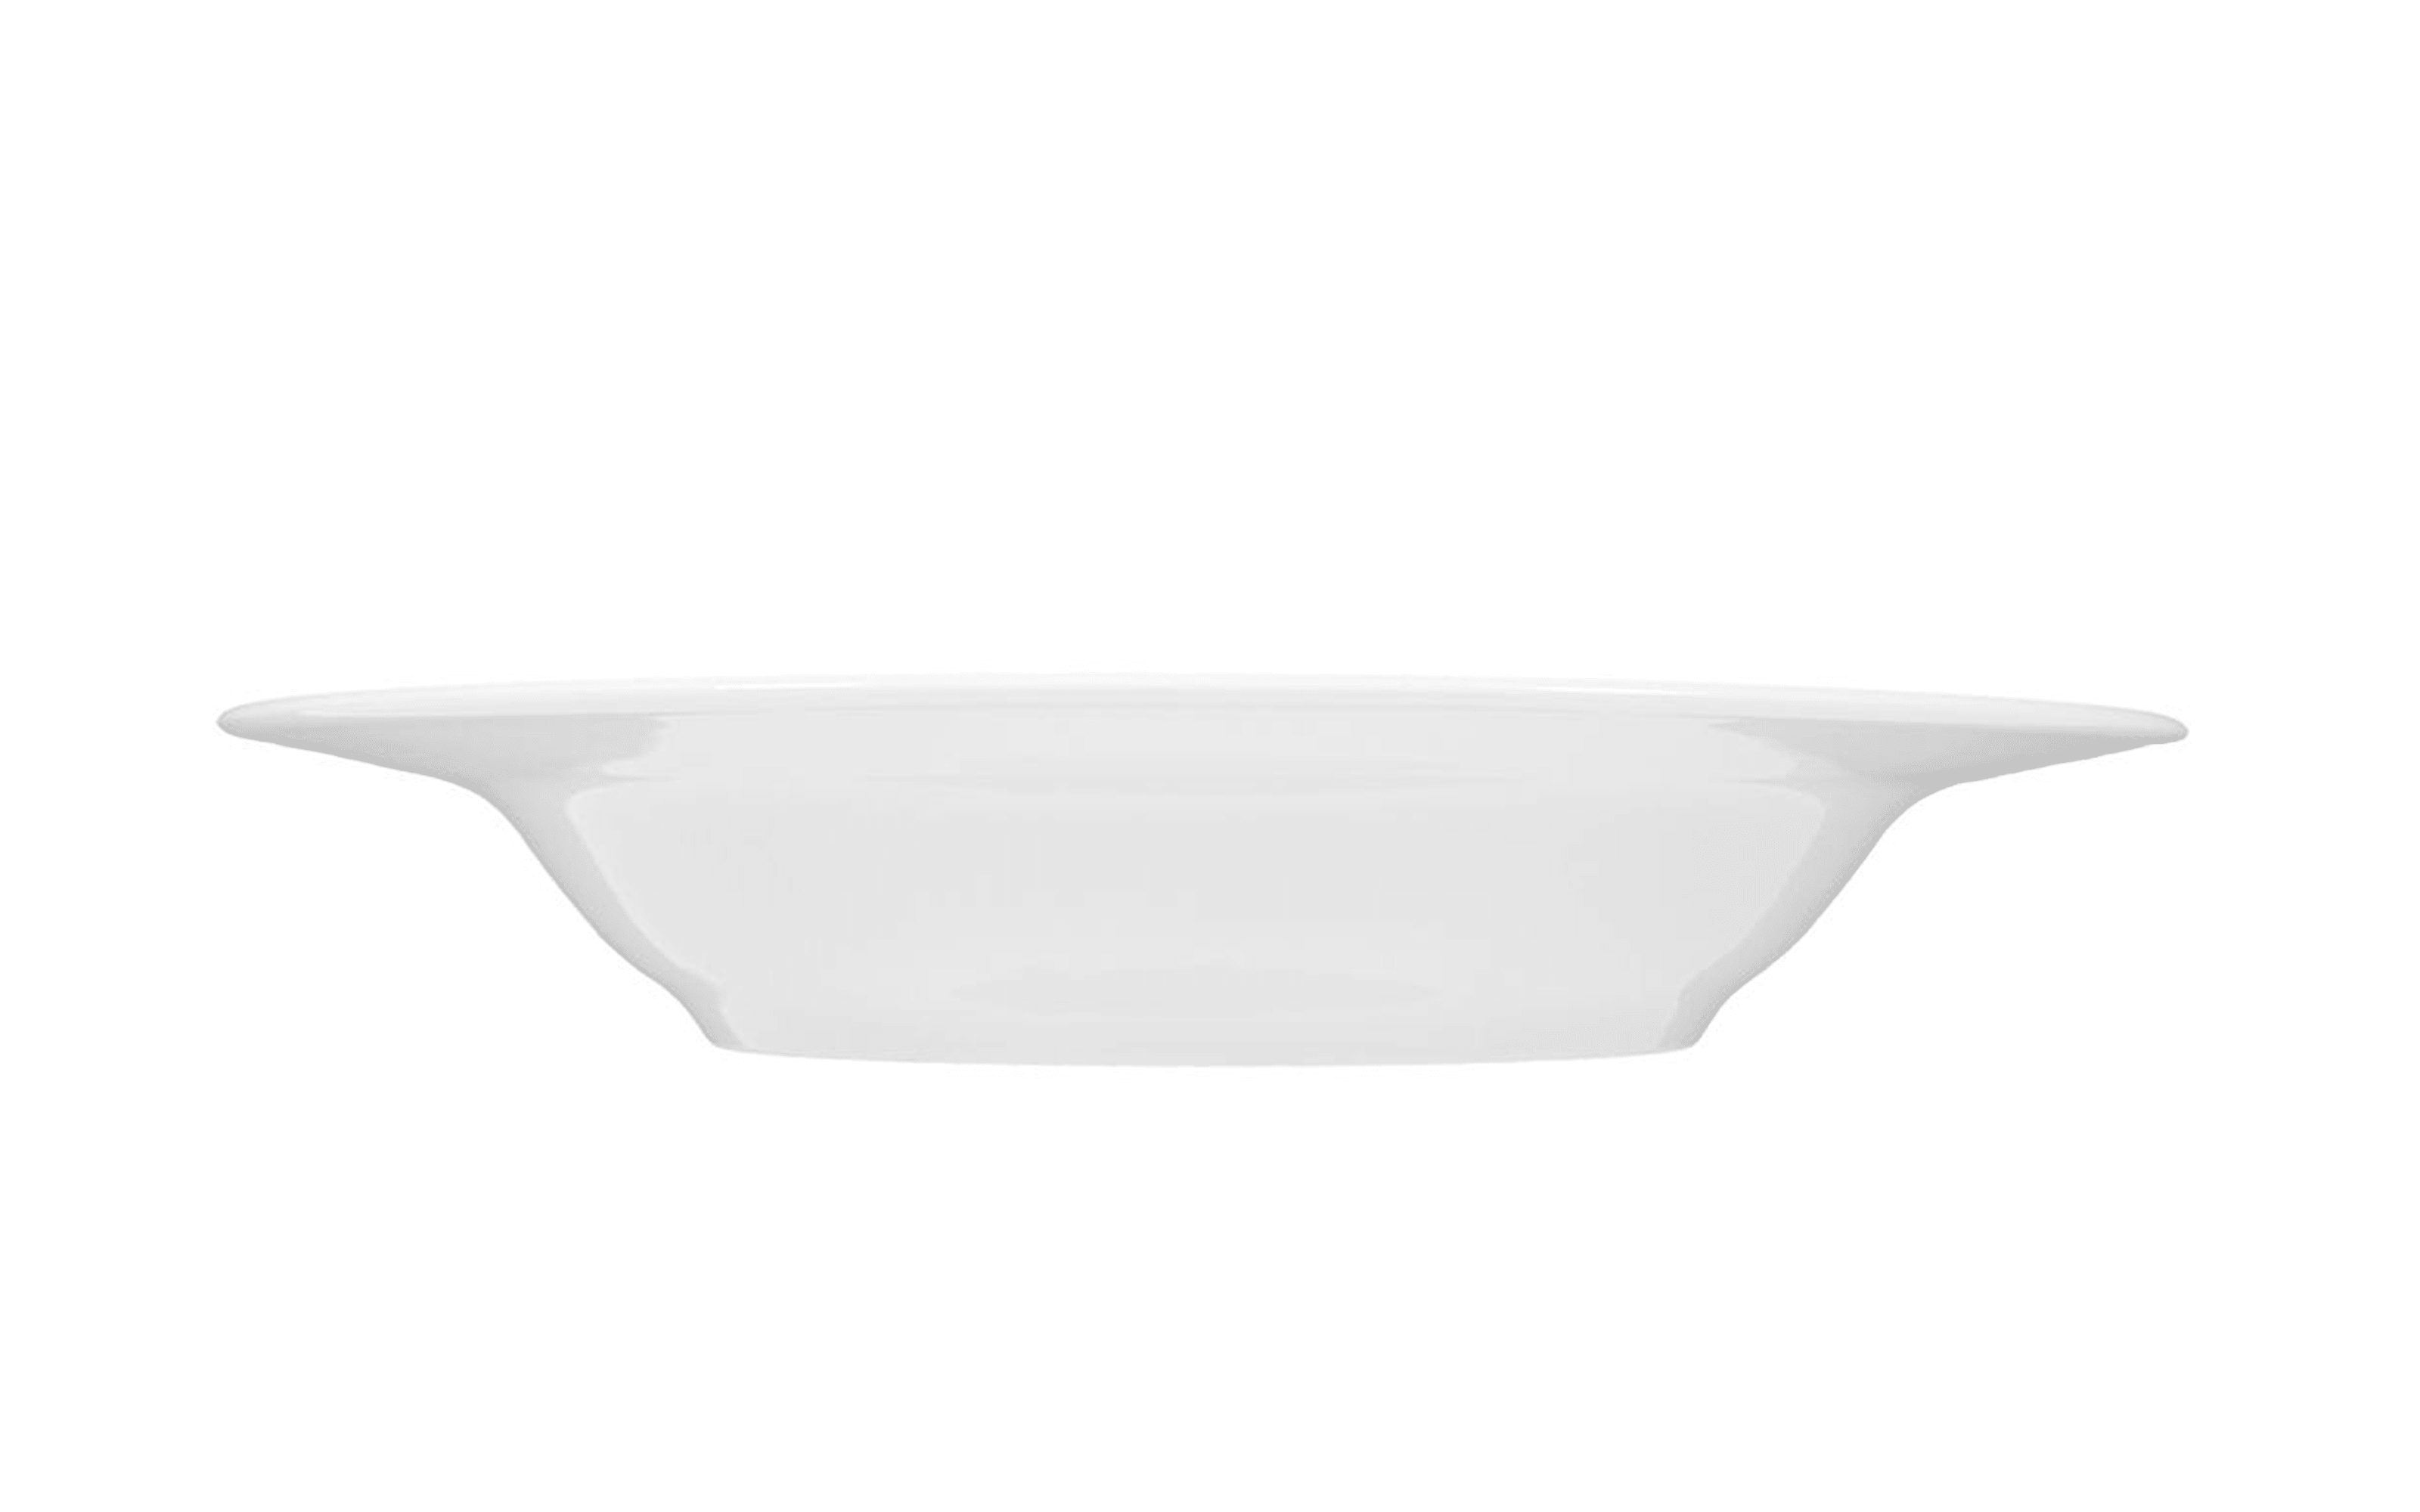 Suppenteller Rondo Liane in weiß, 23 cm